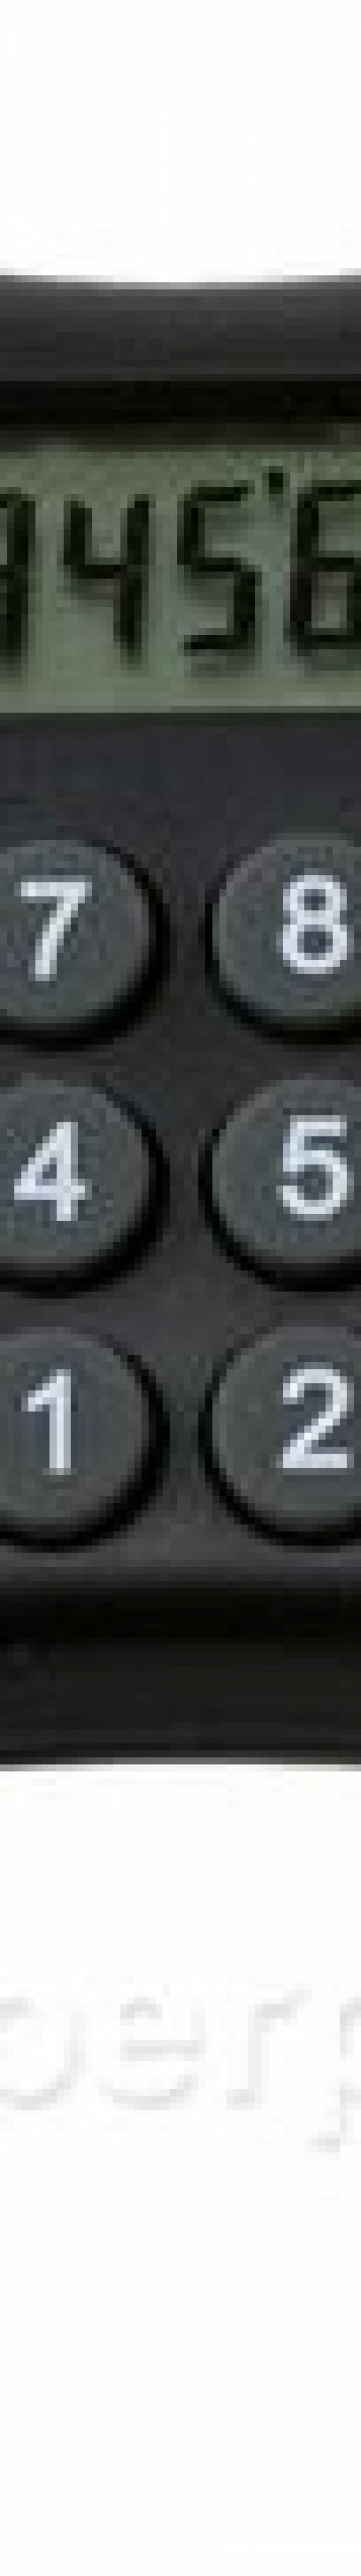 Calculadora em forma de controle de videogame para brincar de fazer conta.